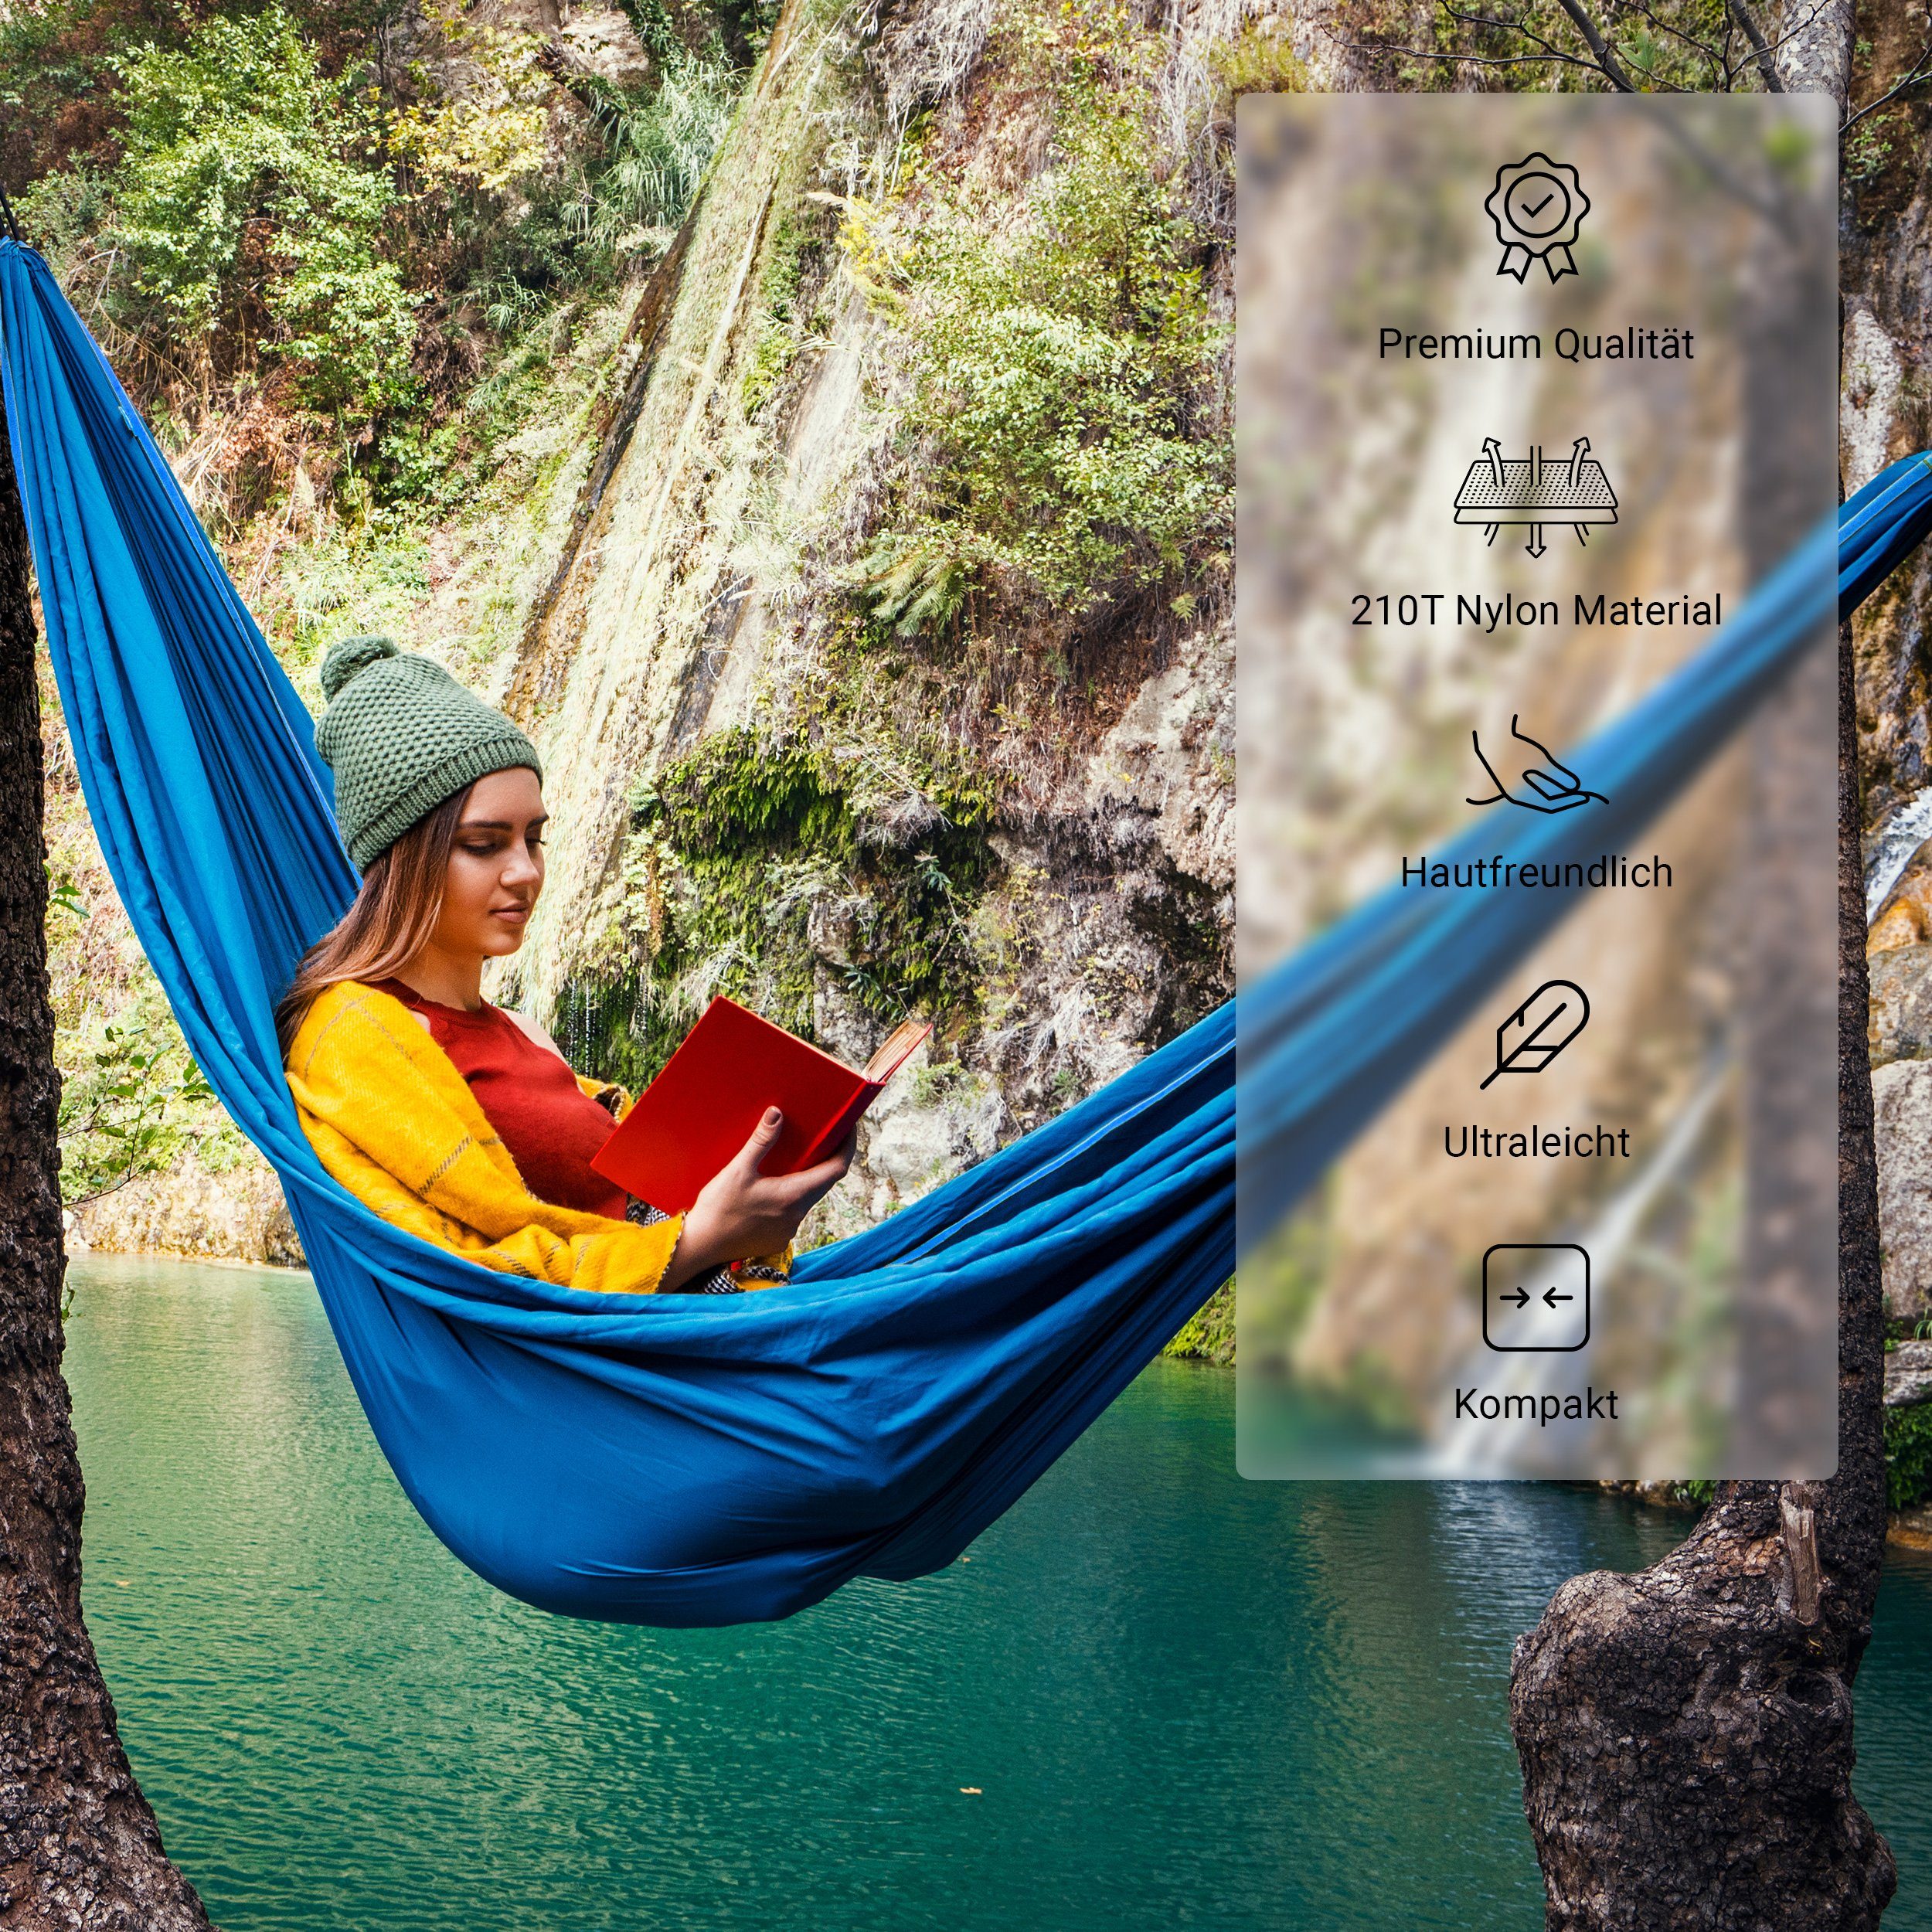 Hängematte MSports® extra Königsblau Hängematte mit Camping MSports Moskitonetz für leicht Outdoor Sonnenliege